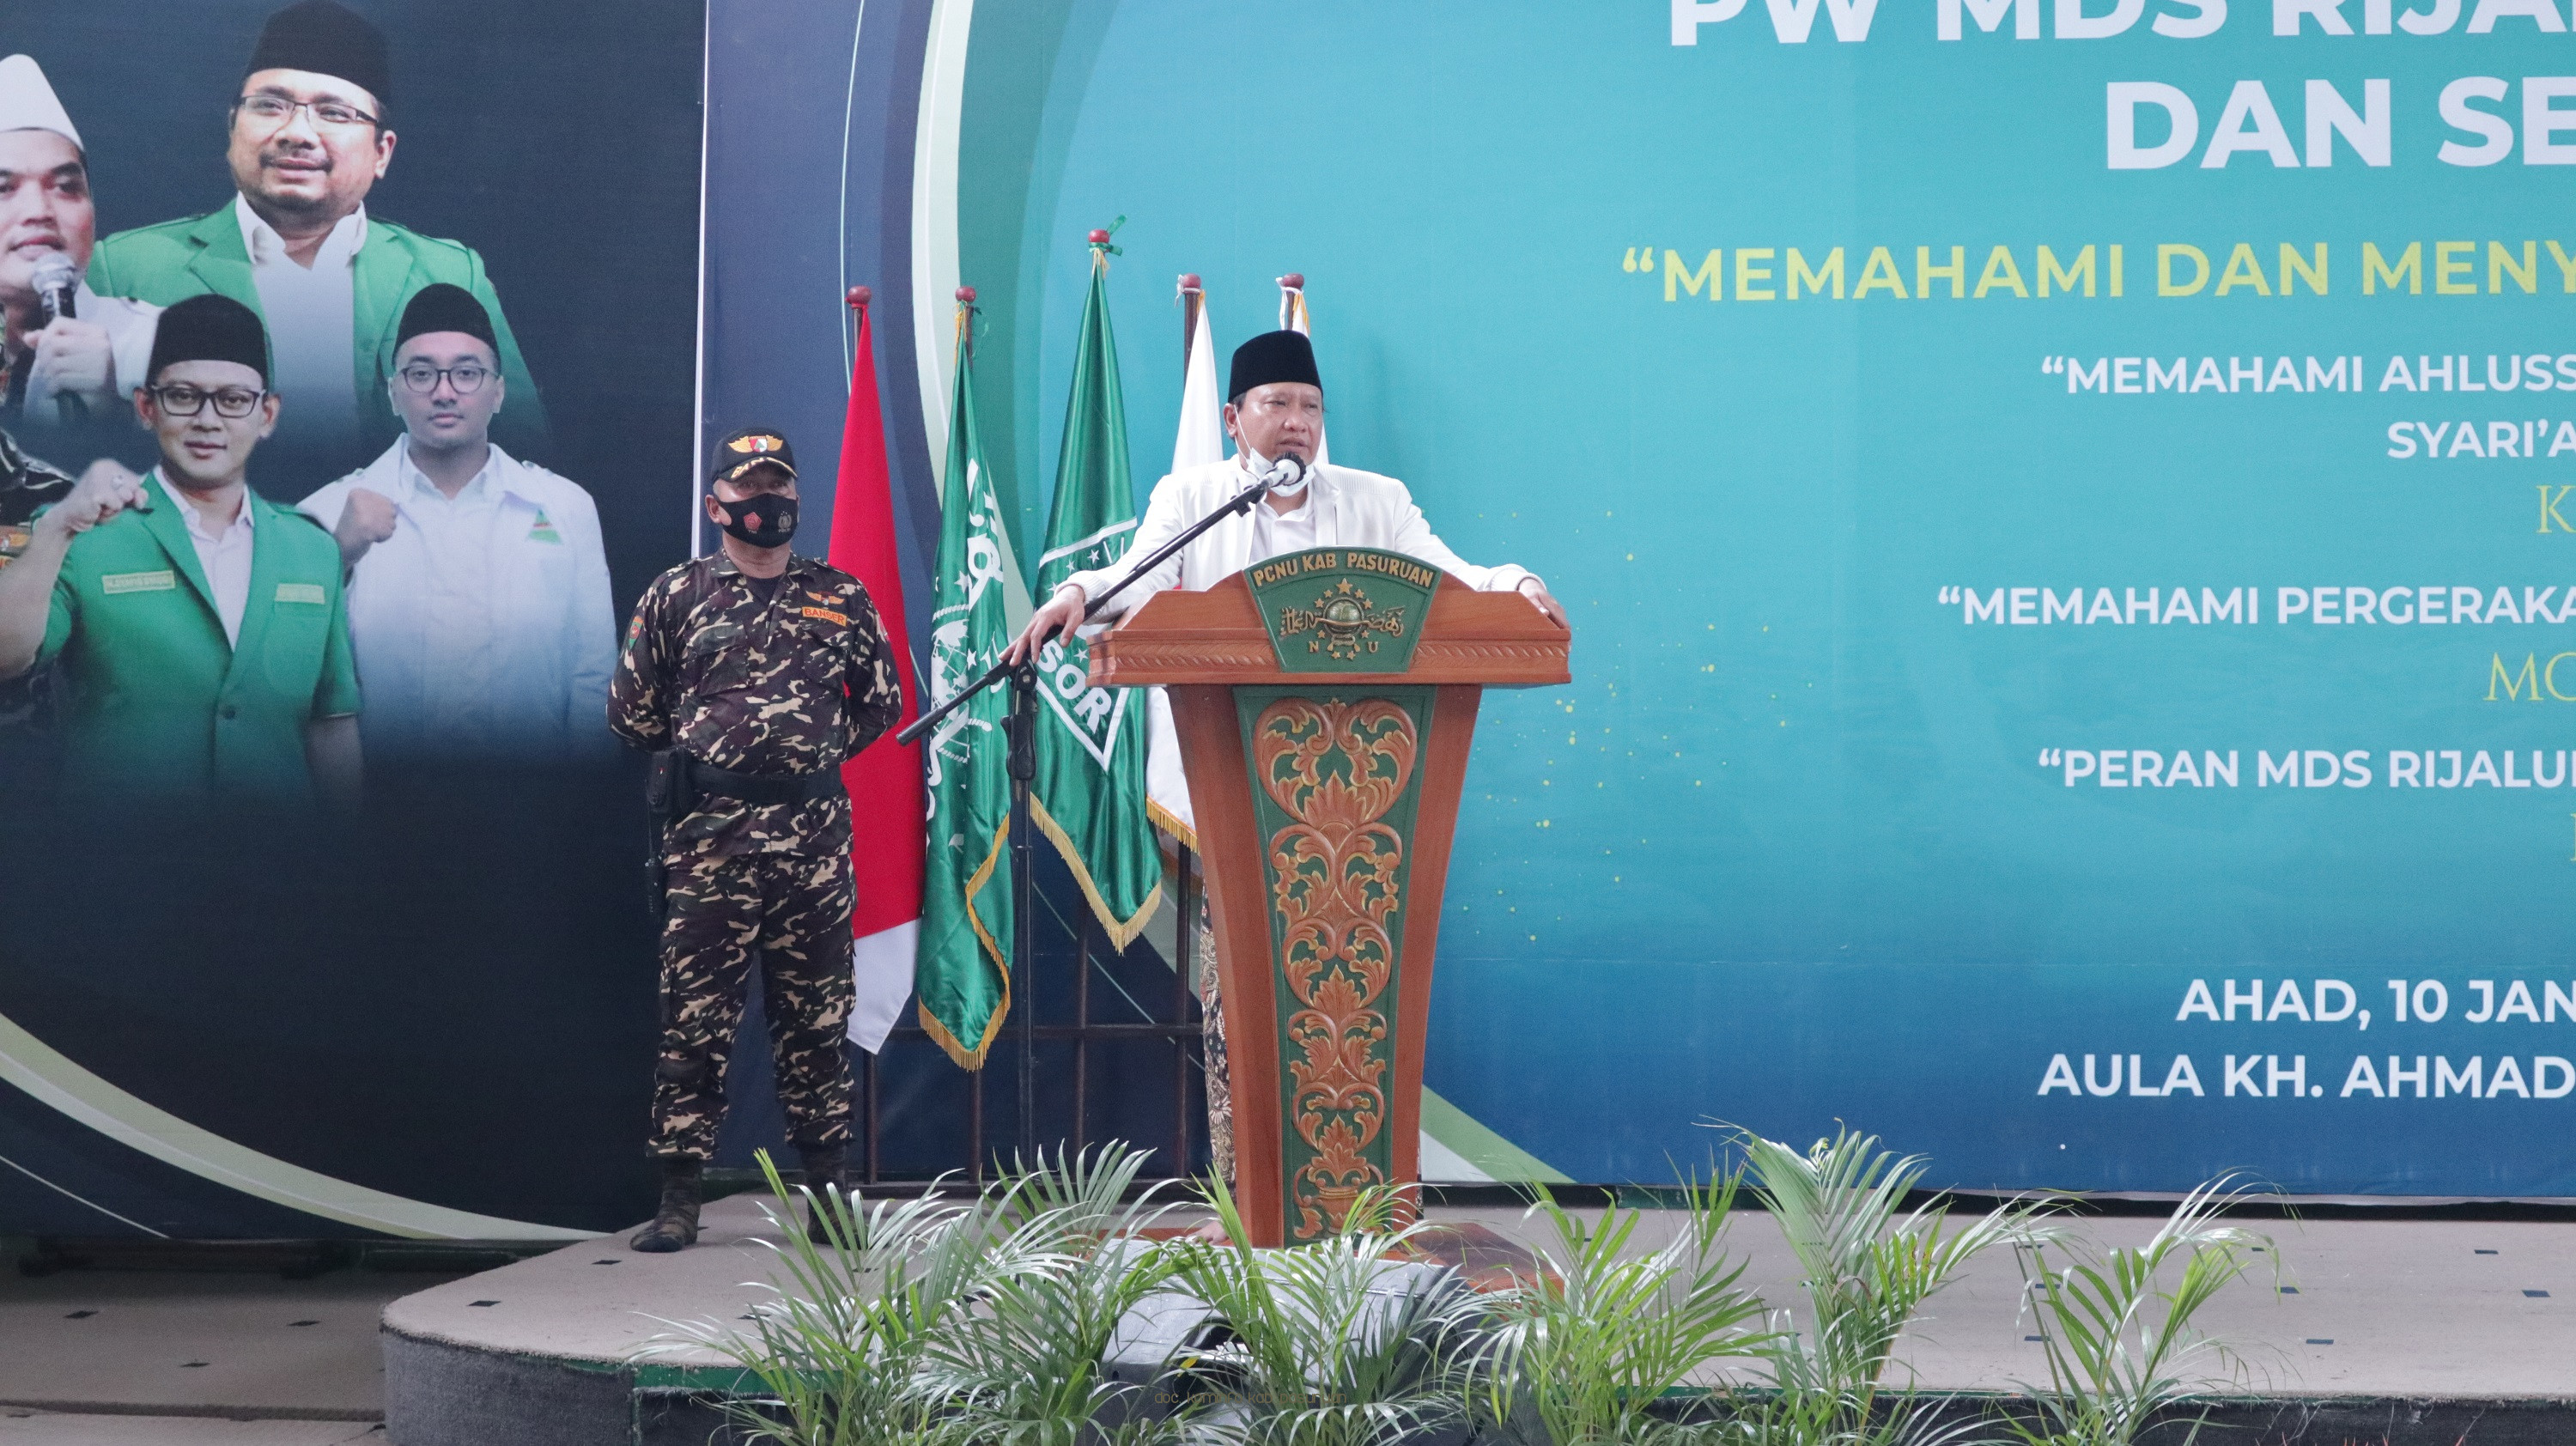 Hadiri Pengukuhan PW MDS Rijatul Ansor Jatim, Bupati Ucapkan Selamat Kepada Seluruh Pengurus Yang Dilantik